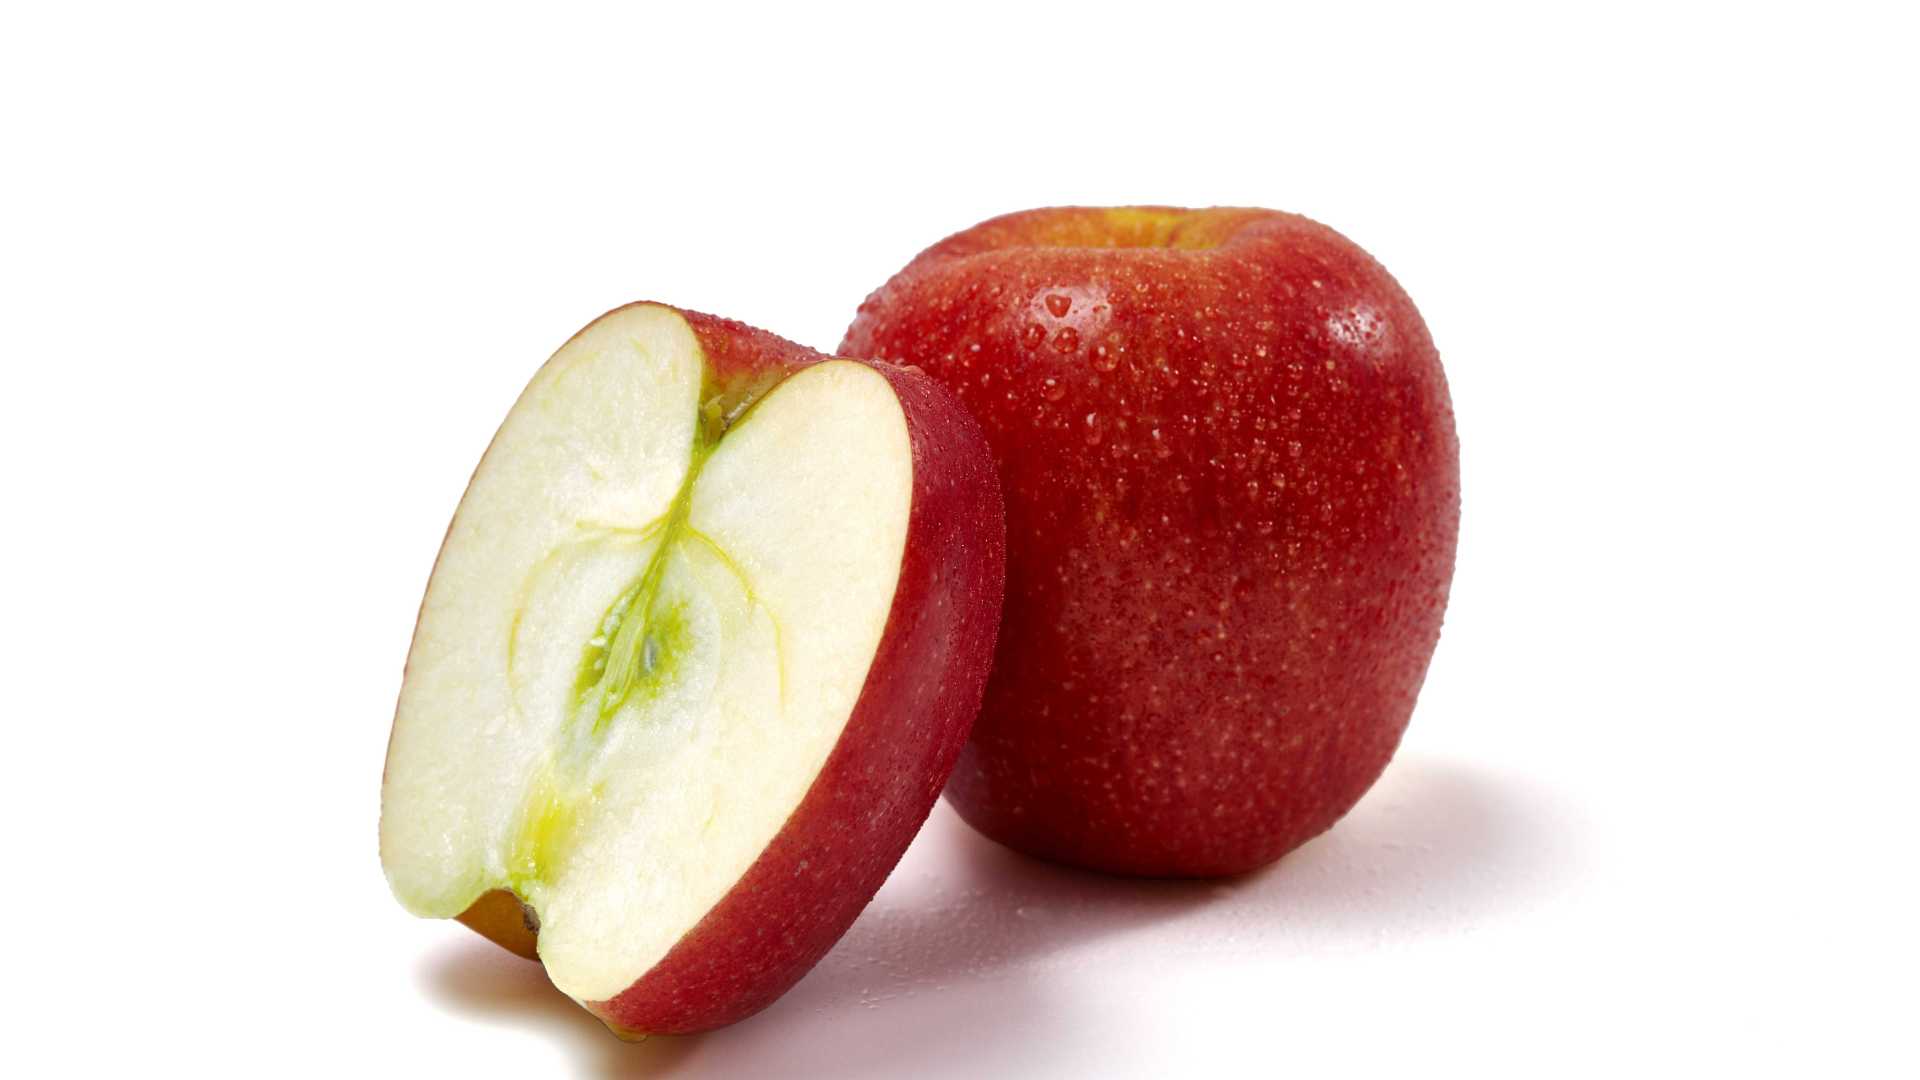 拍出水果的诱惑力苹果产品视频拍摄形象片